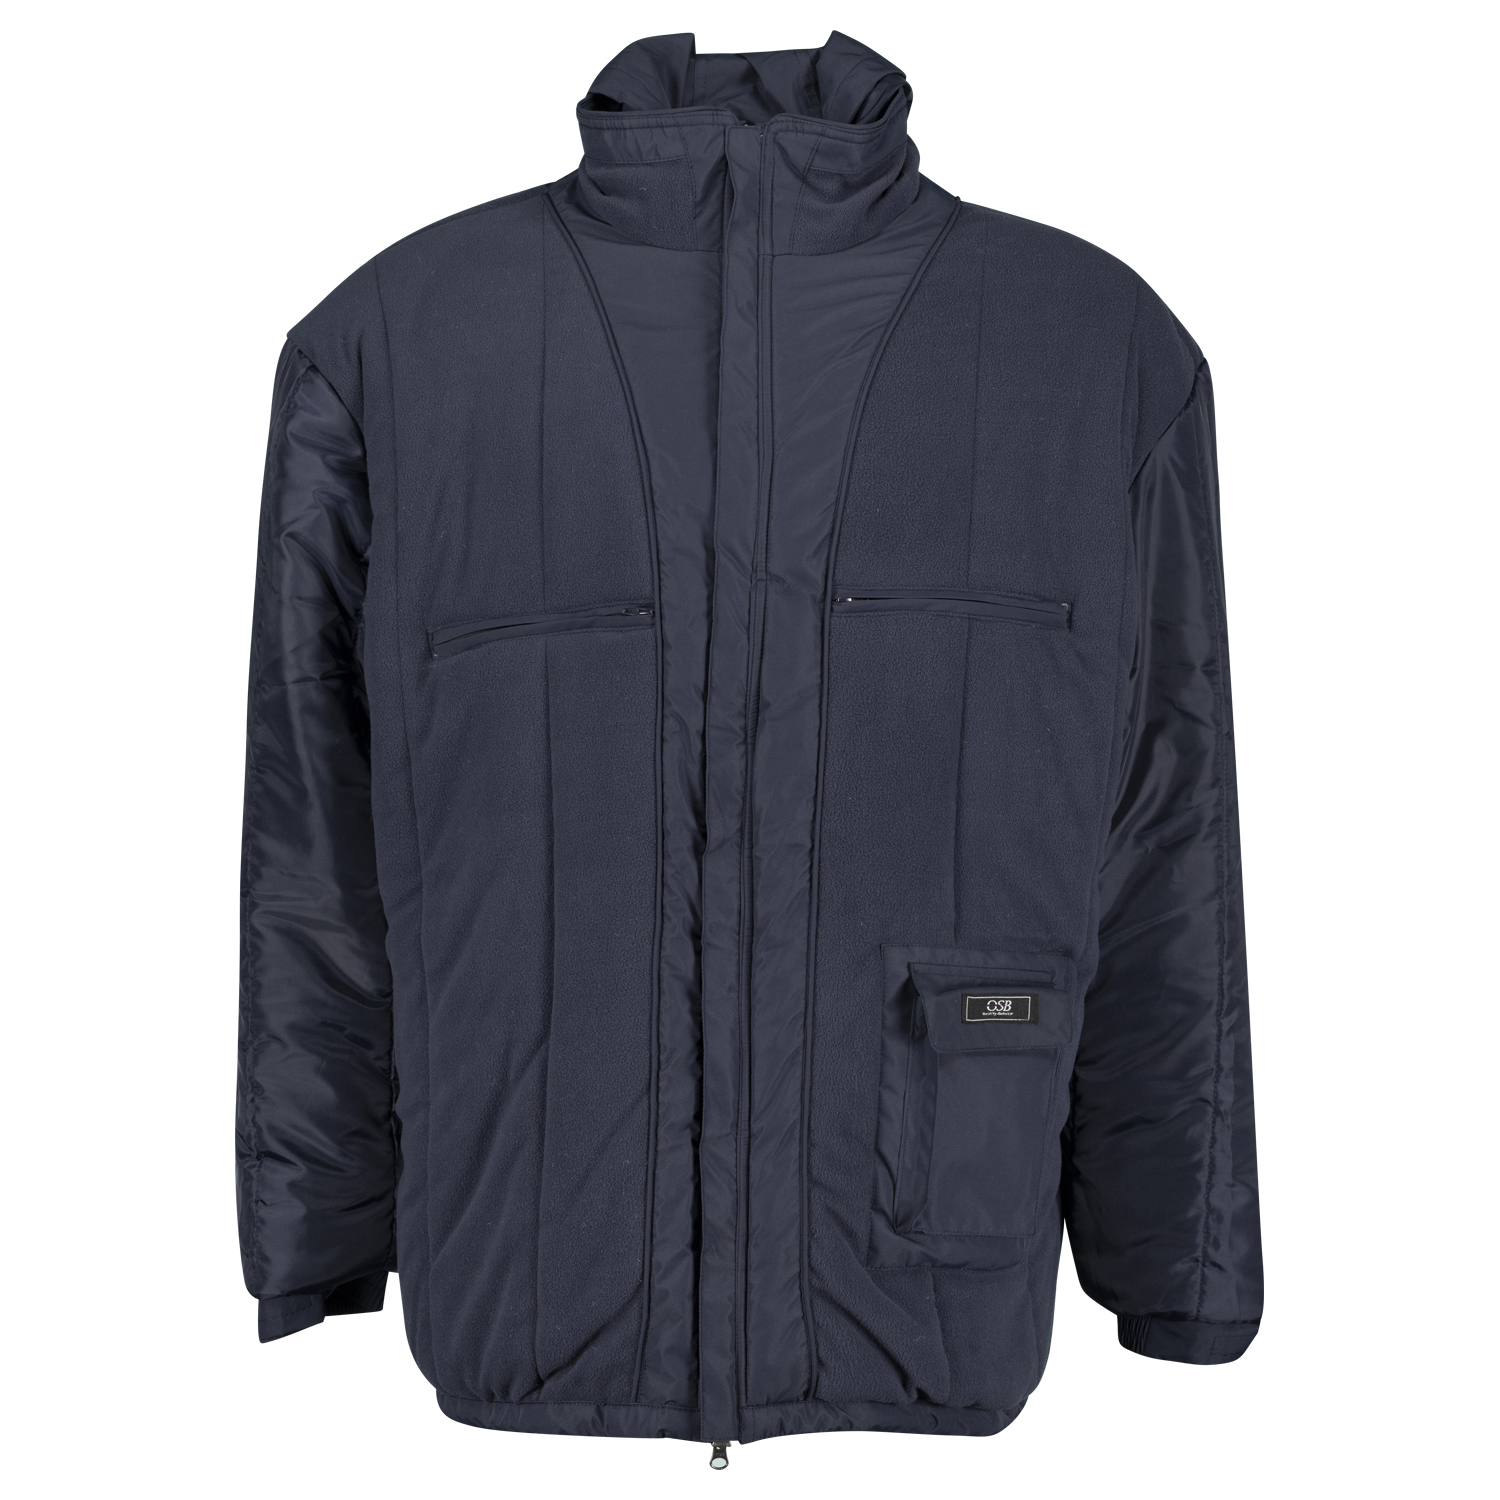 Wasserdichte Jacke in großen Größen von Brigg, Farbe navy bis 14XL